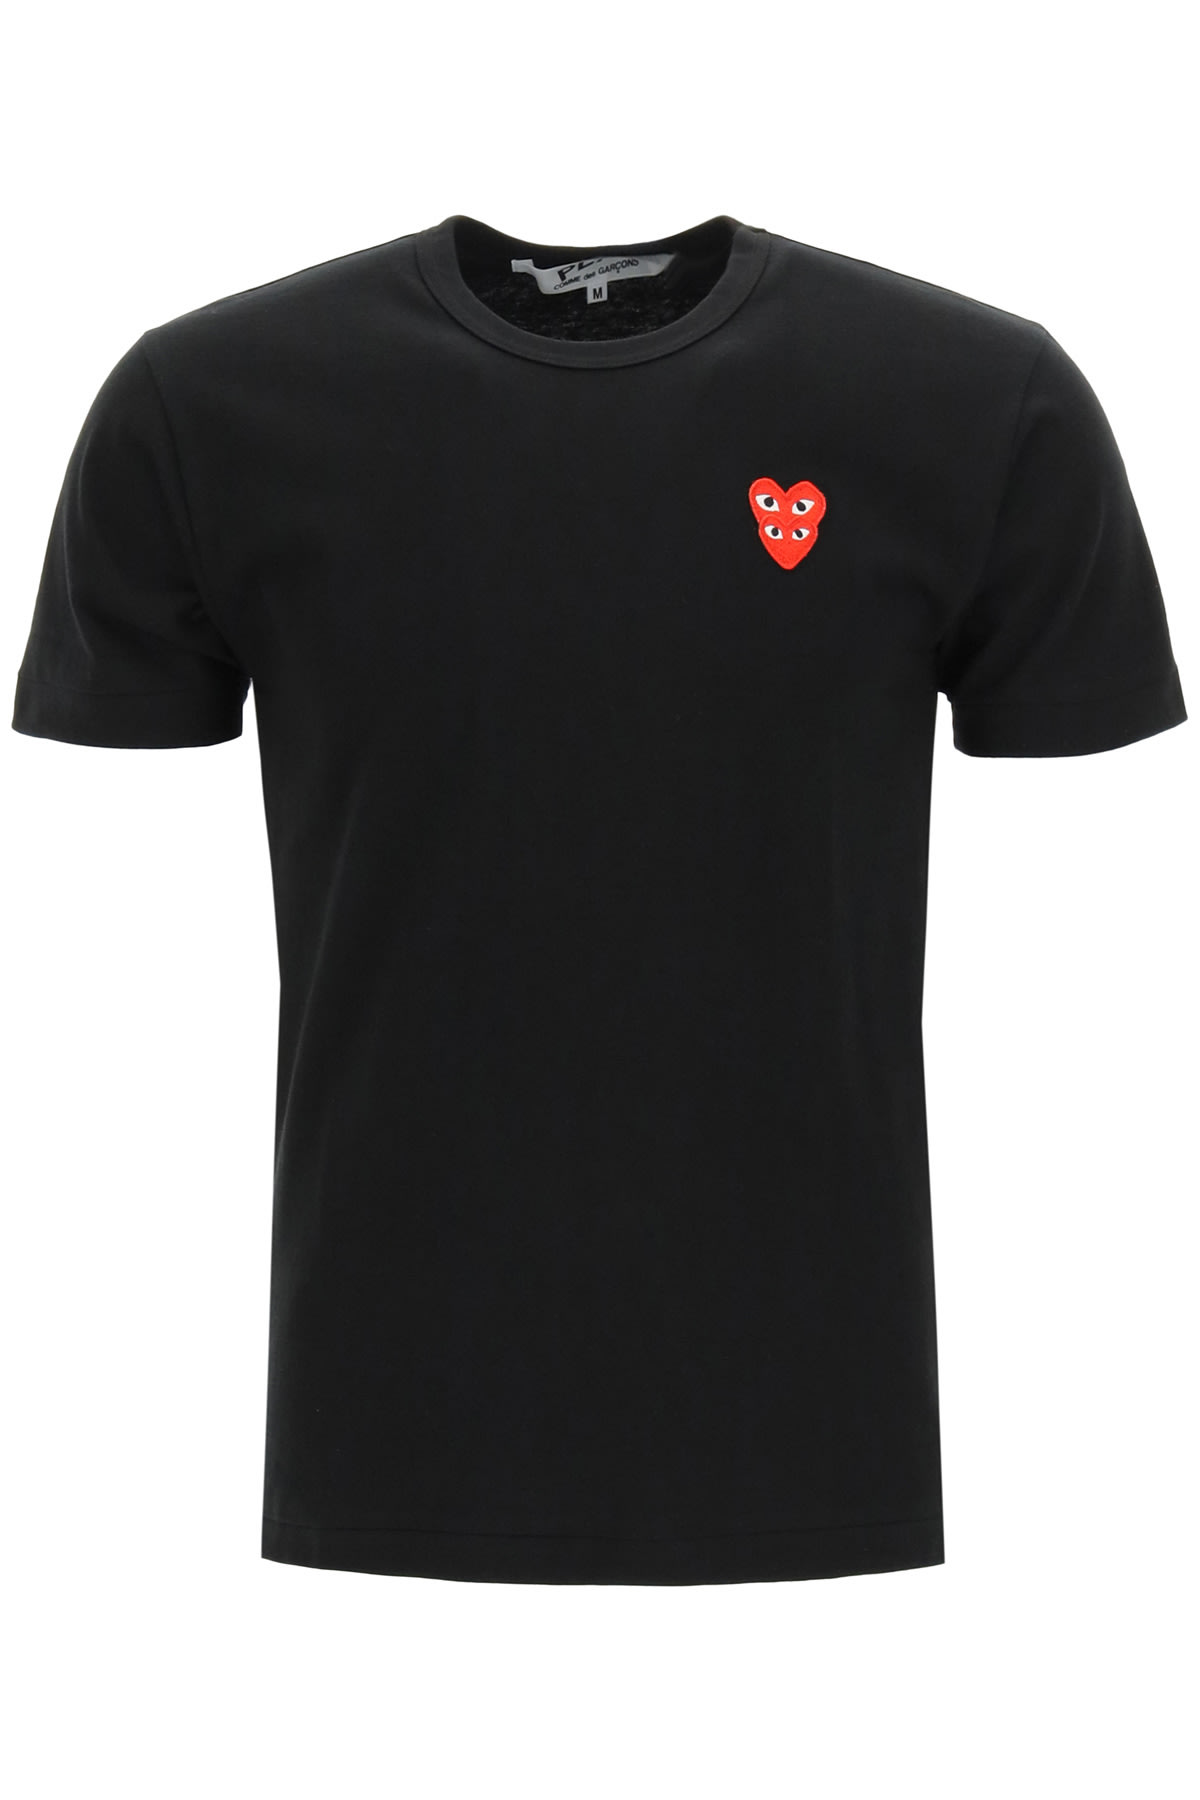 Comme des Garçons Shirt Boy Play T-shirt With Heart Logo Patch